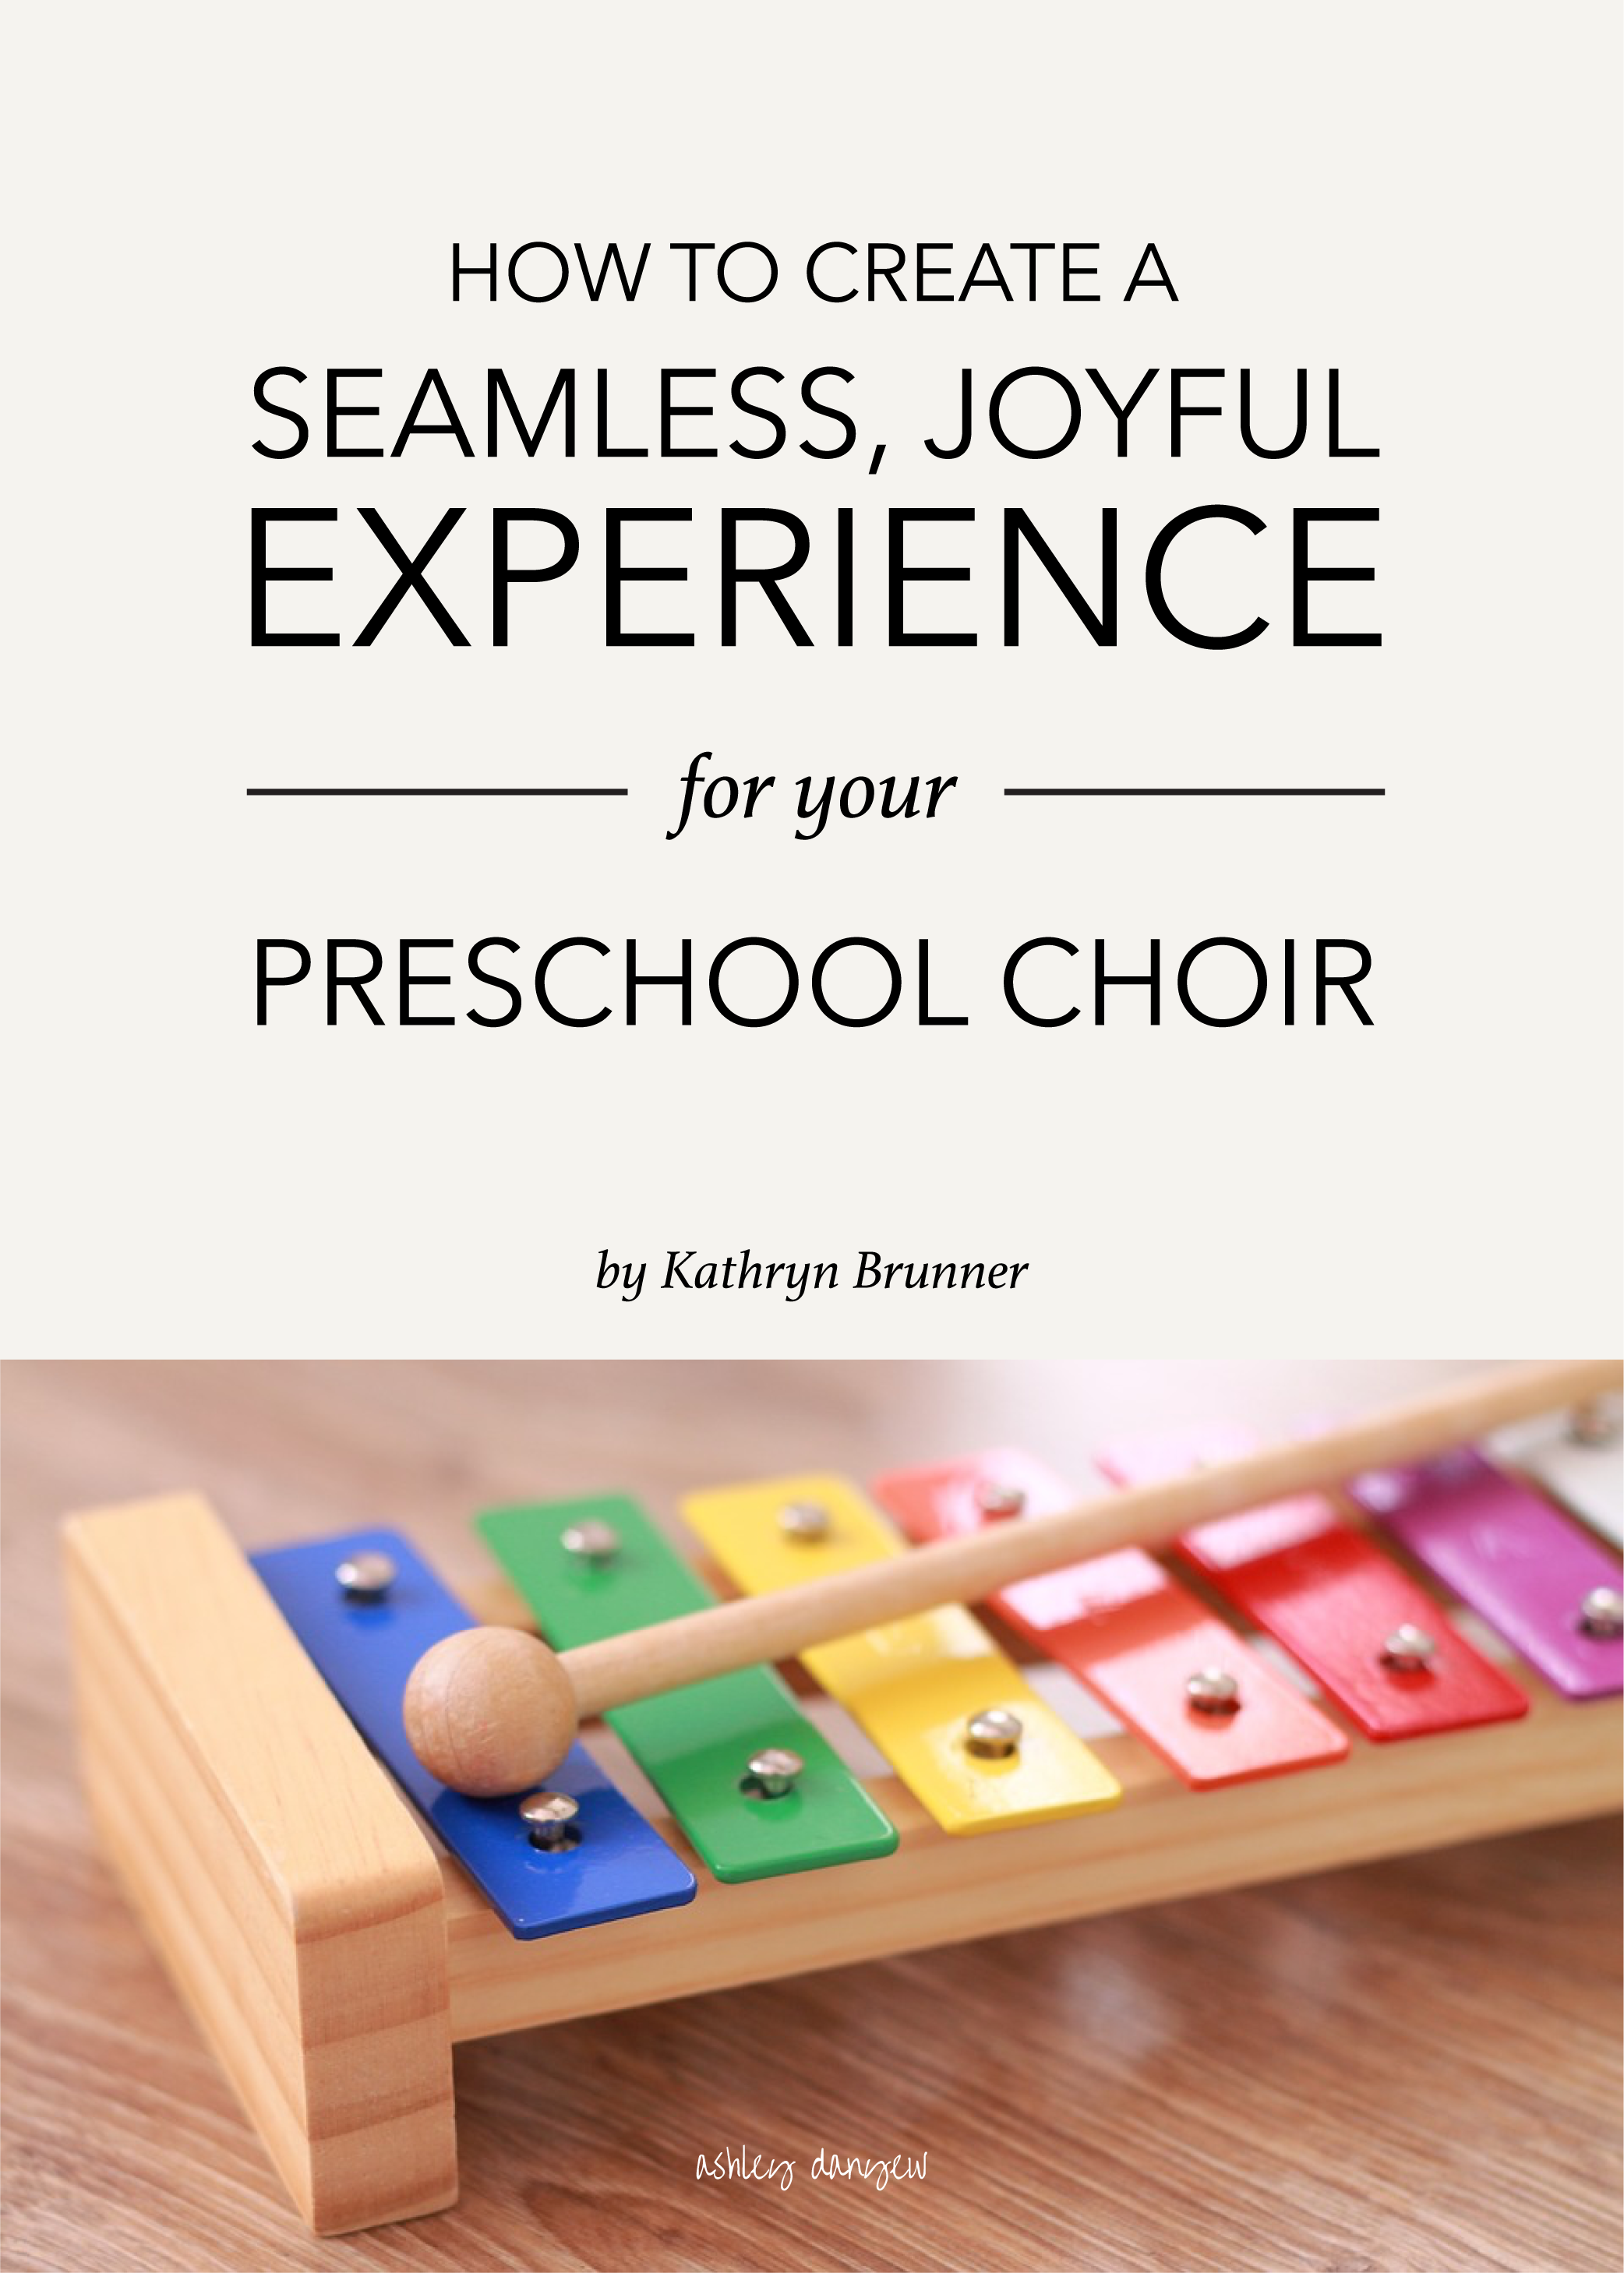 Copy of How to Create a Seamless, Joyful Experience for Your Preschool Choir